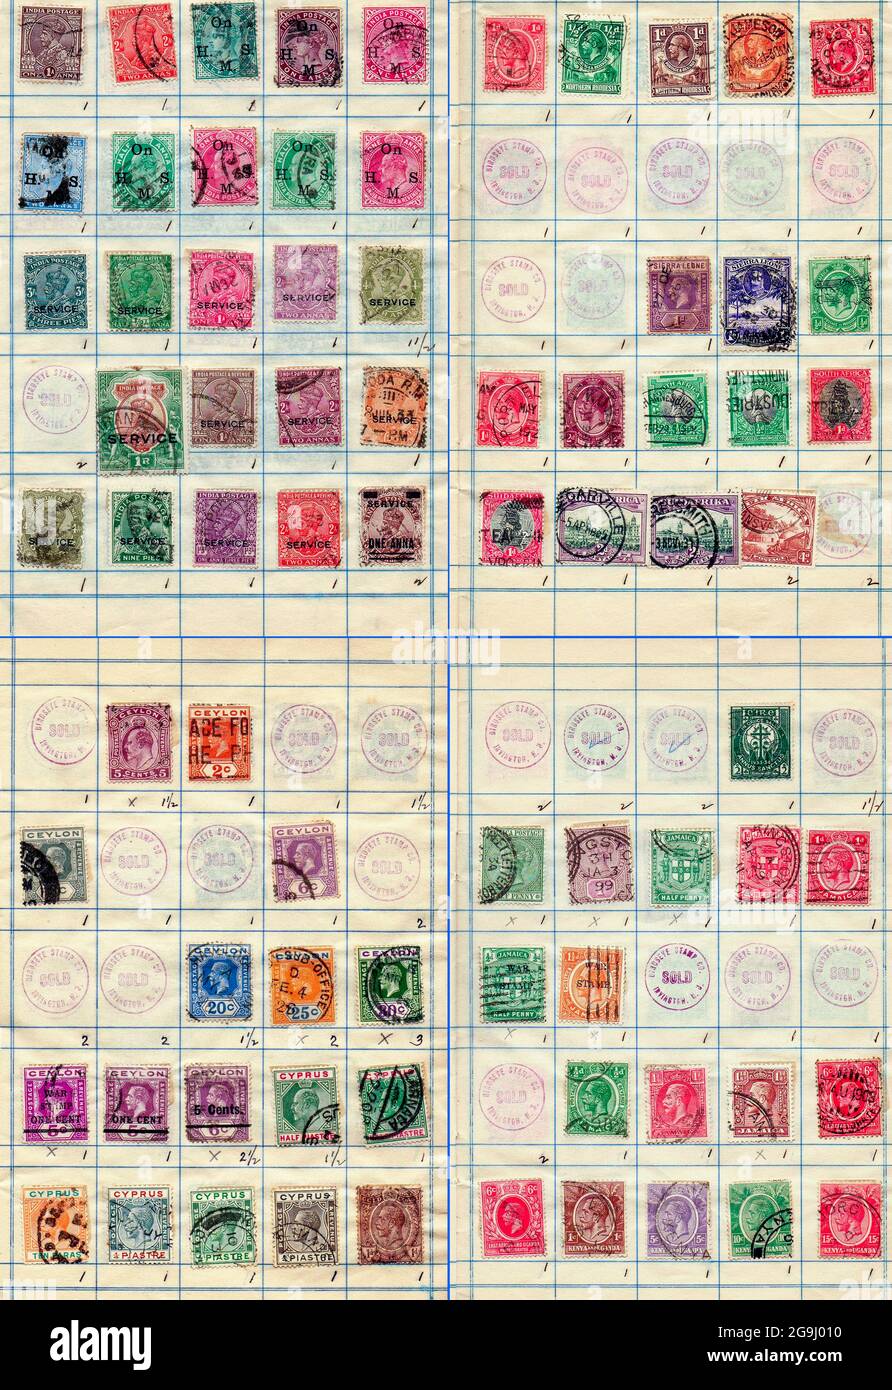 Eine Sammlung alter Briefmarken aus verschiedenen Teilen der British Empire Philately ist die Erforschung von Briefmarken und Postgeschichte. Stockfoto